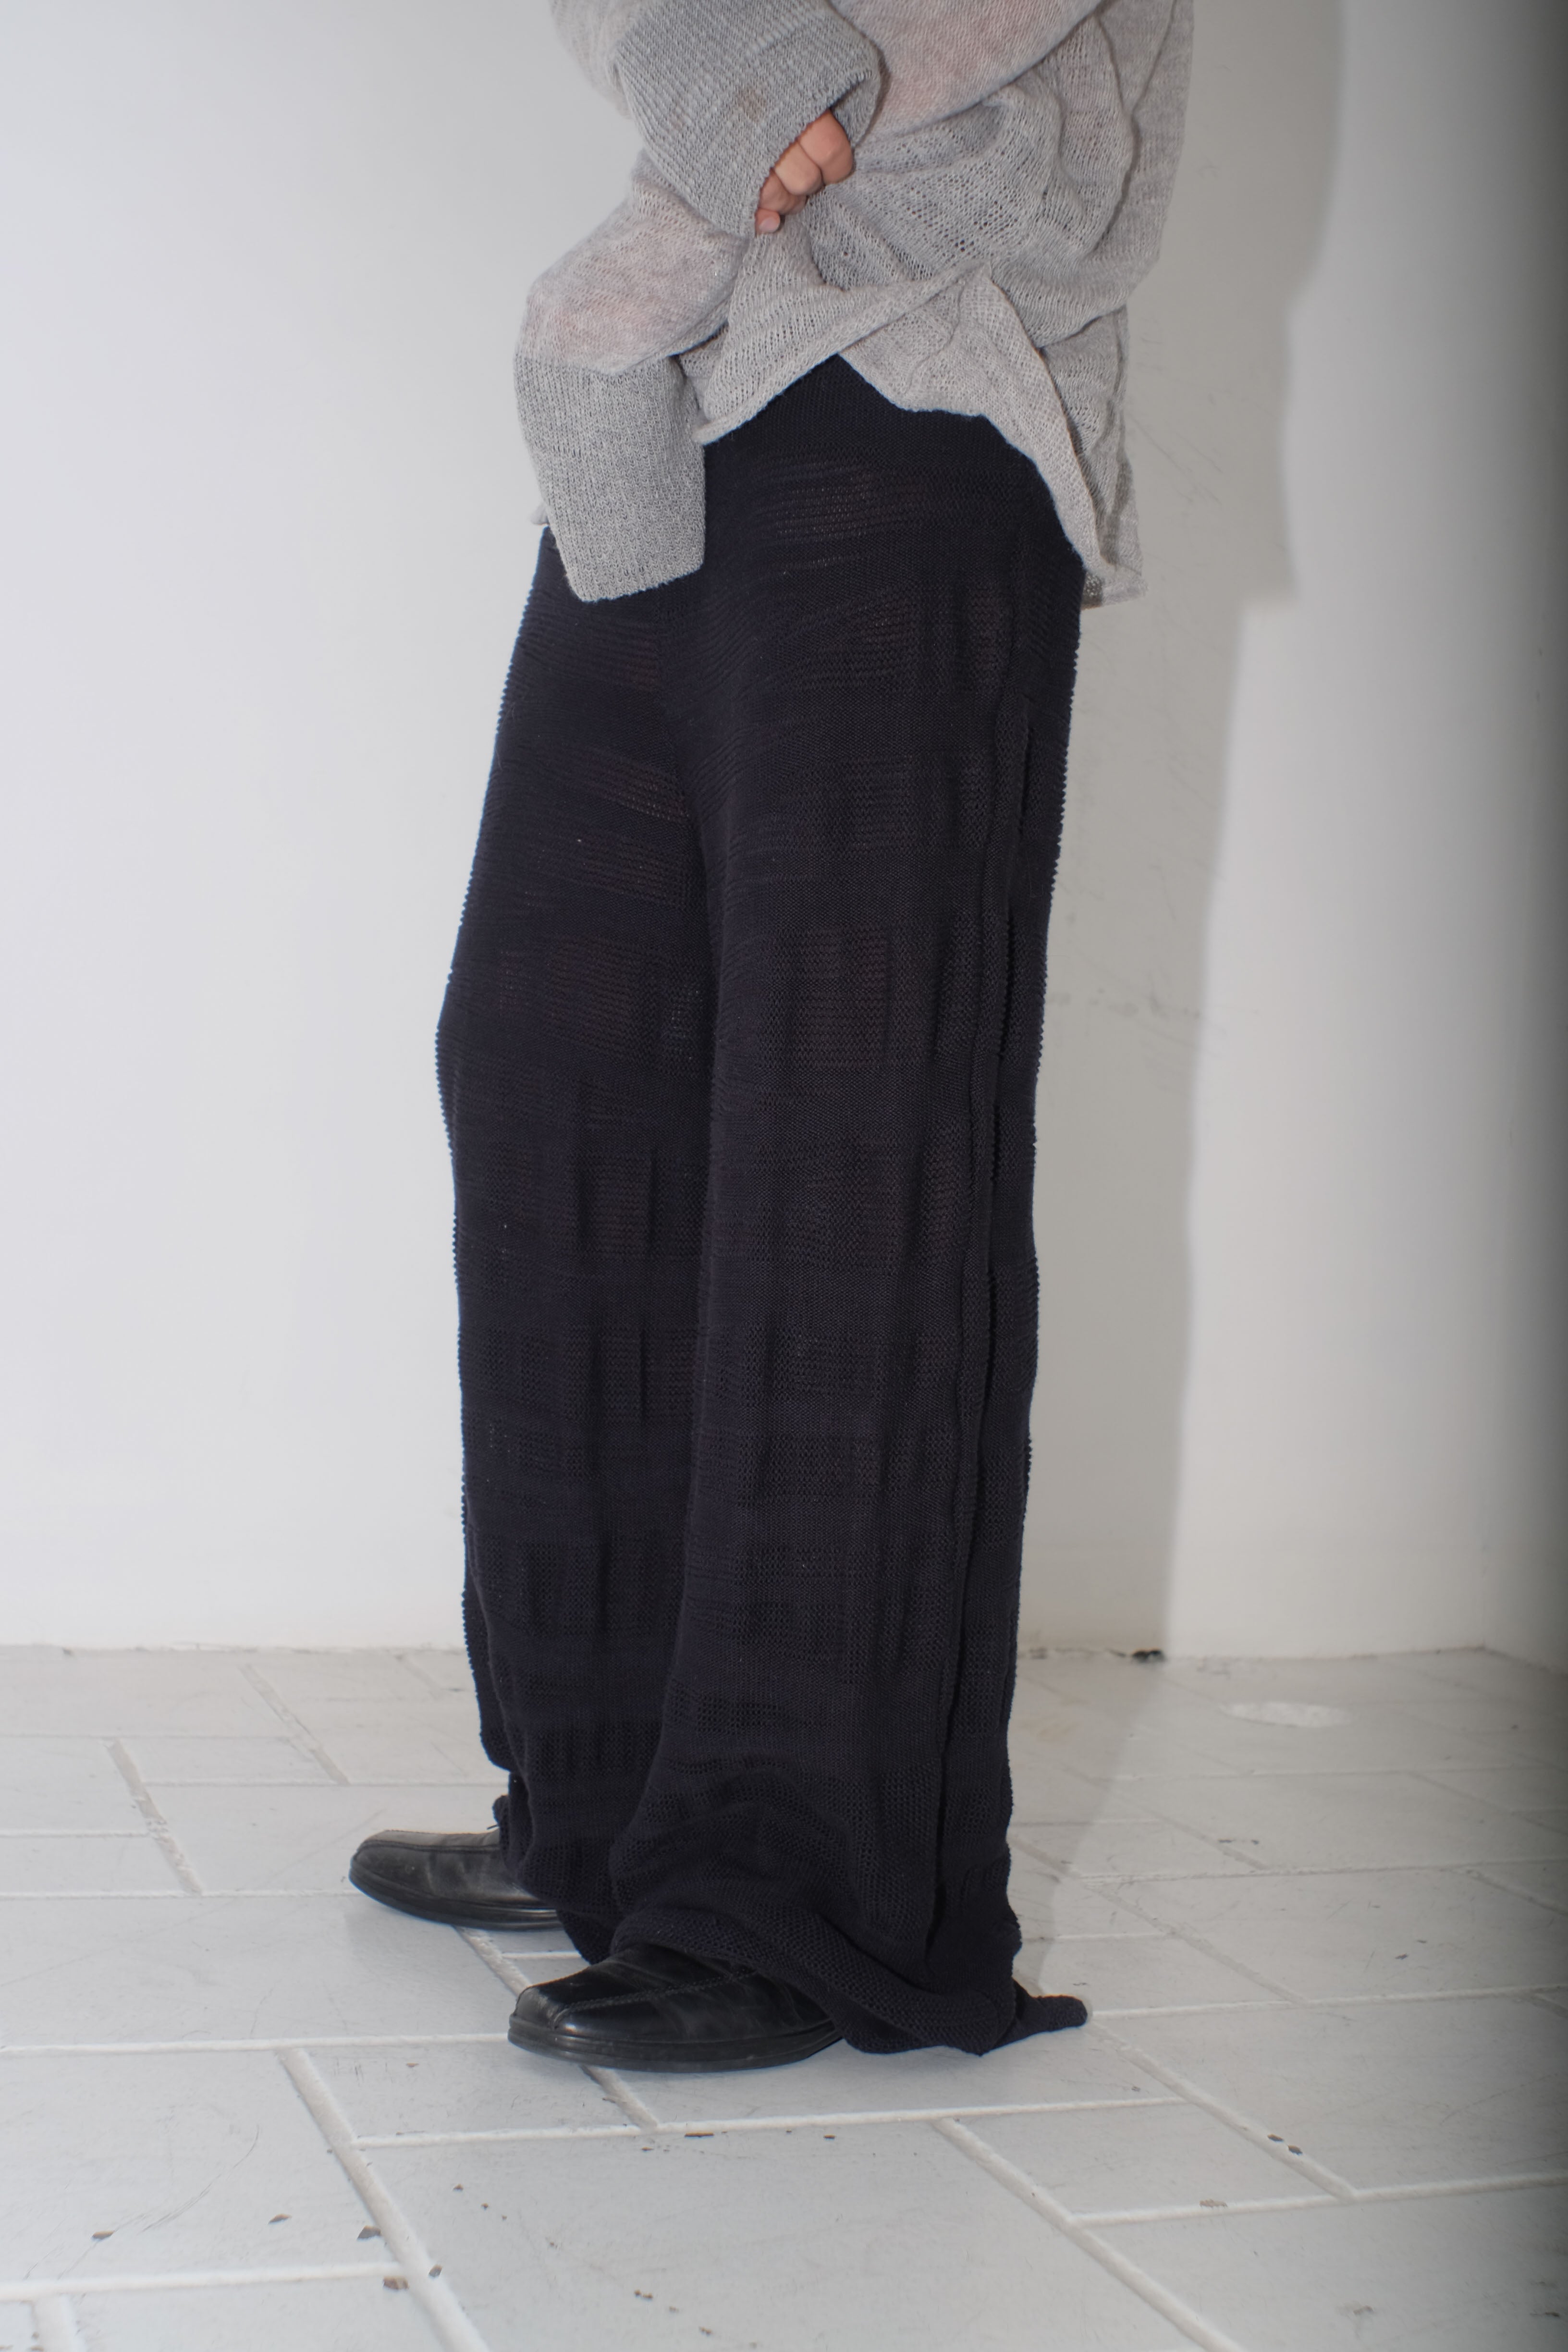 krystal paniagua dt trousers black knitwear